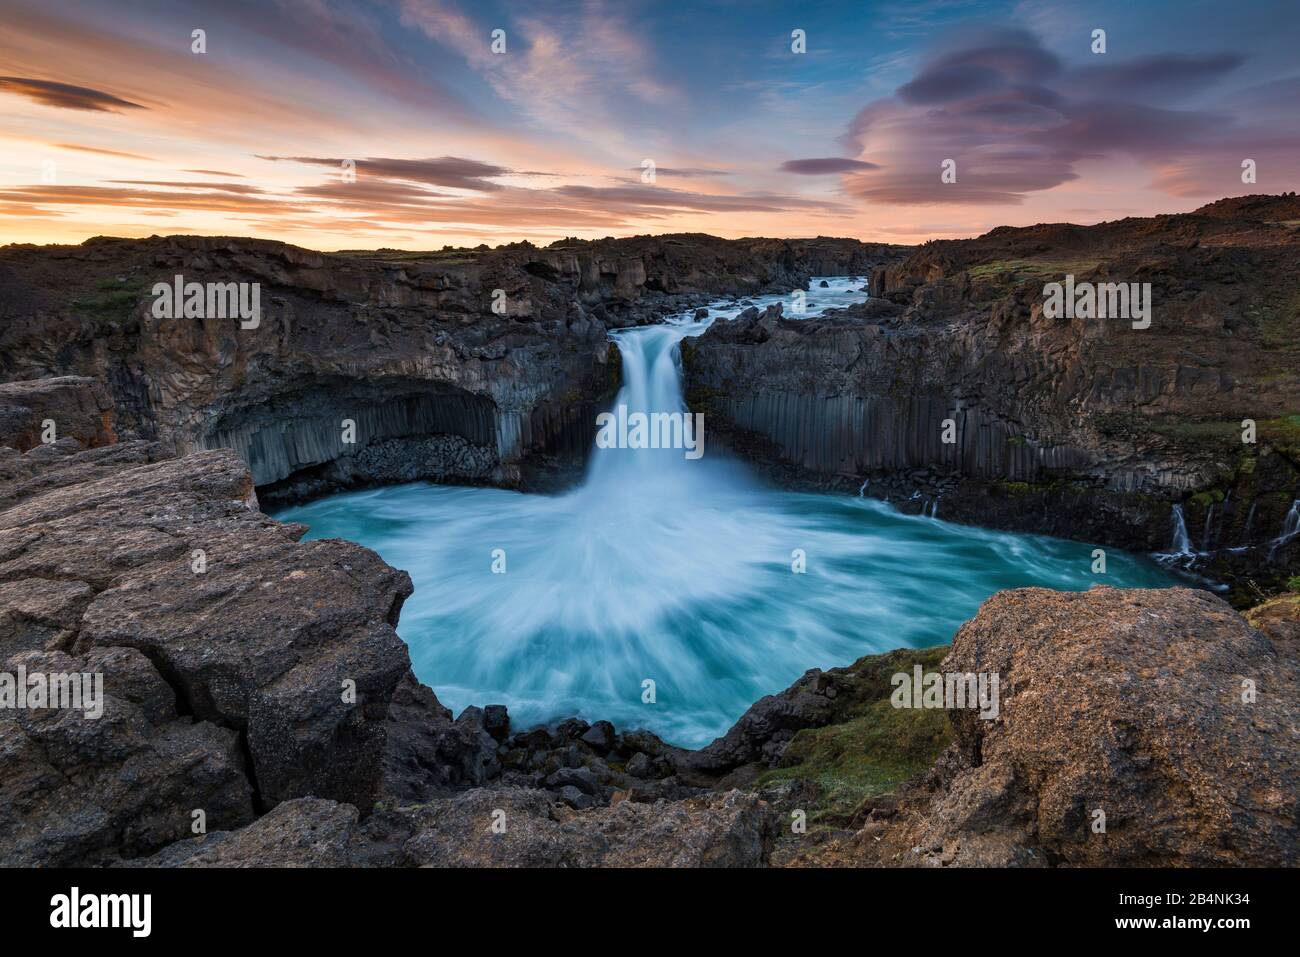 Aldeyjarfoss waterfall, Iceland, during the midnight sun at night Stock Photo